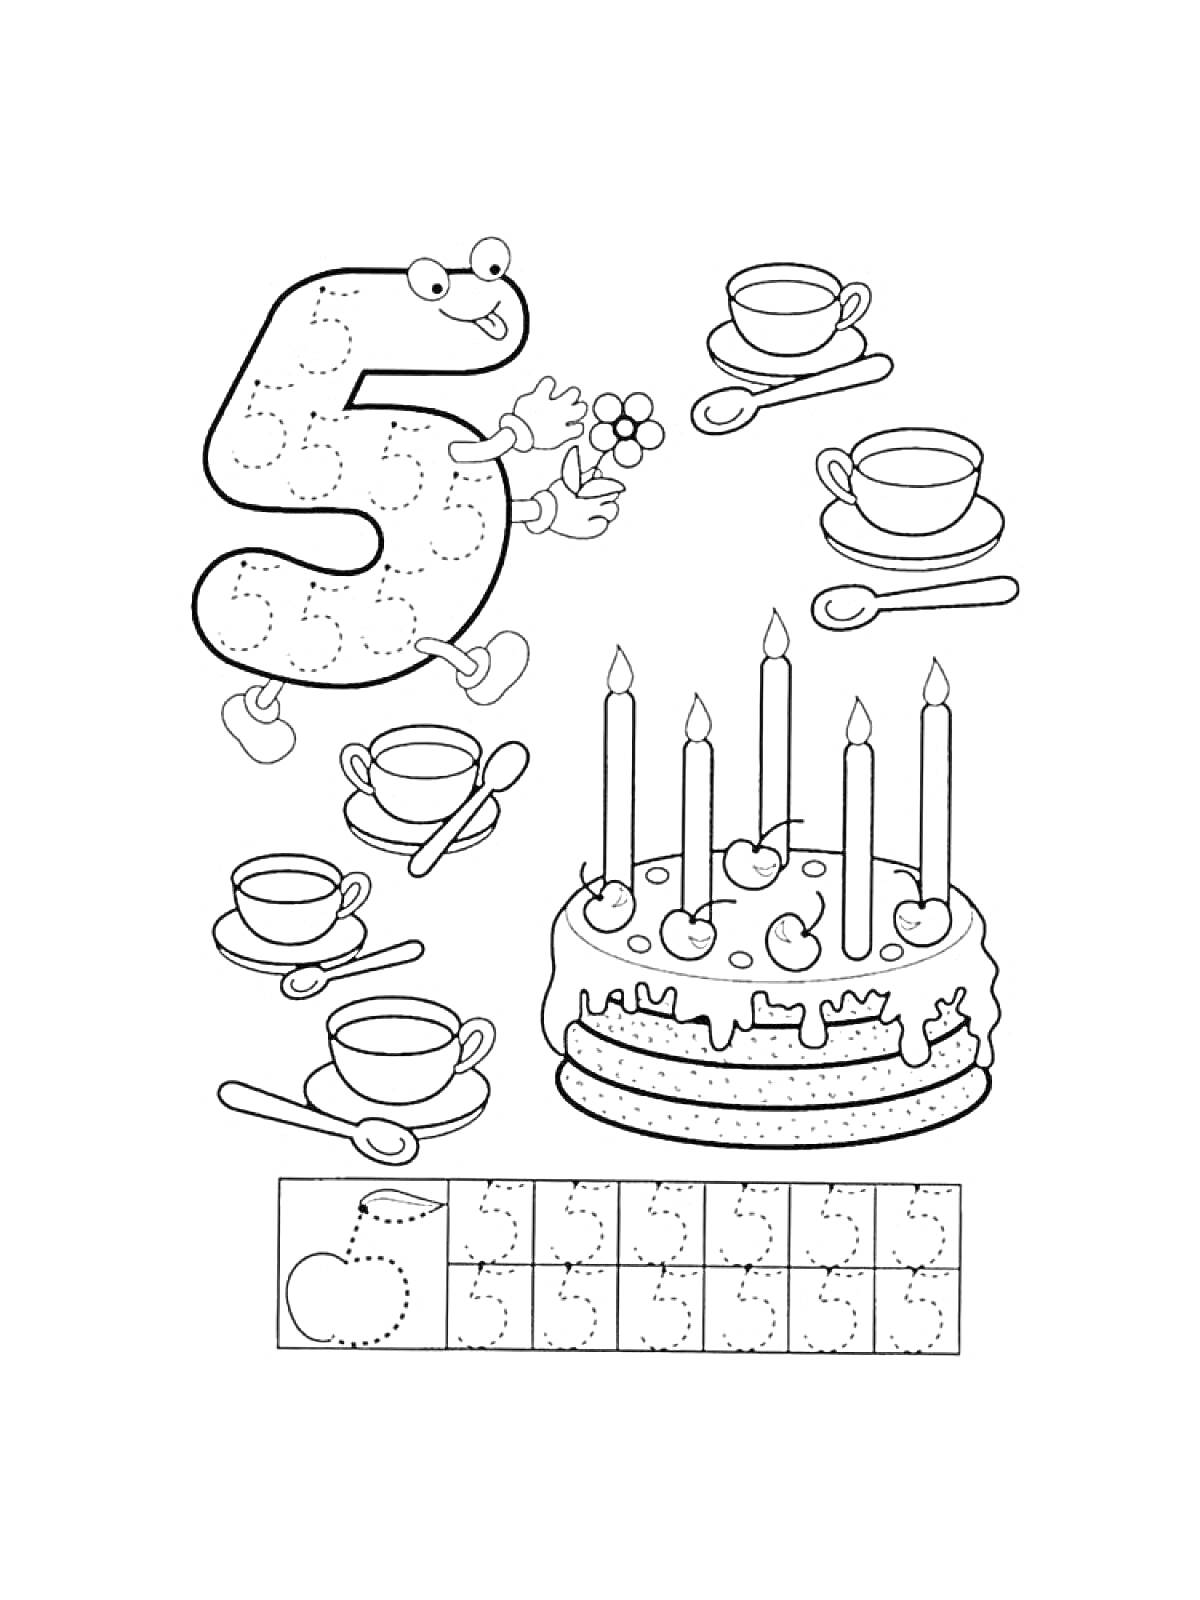 Раскраска Пропись цифры 5 с тортом, чашками и чайными ложками